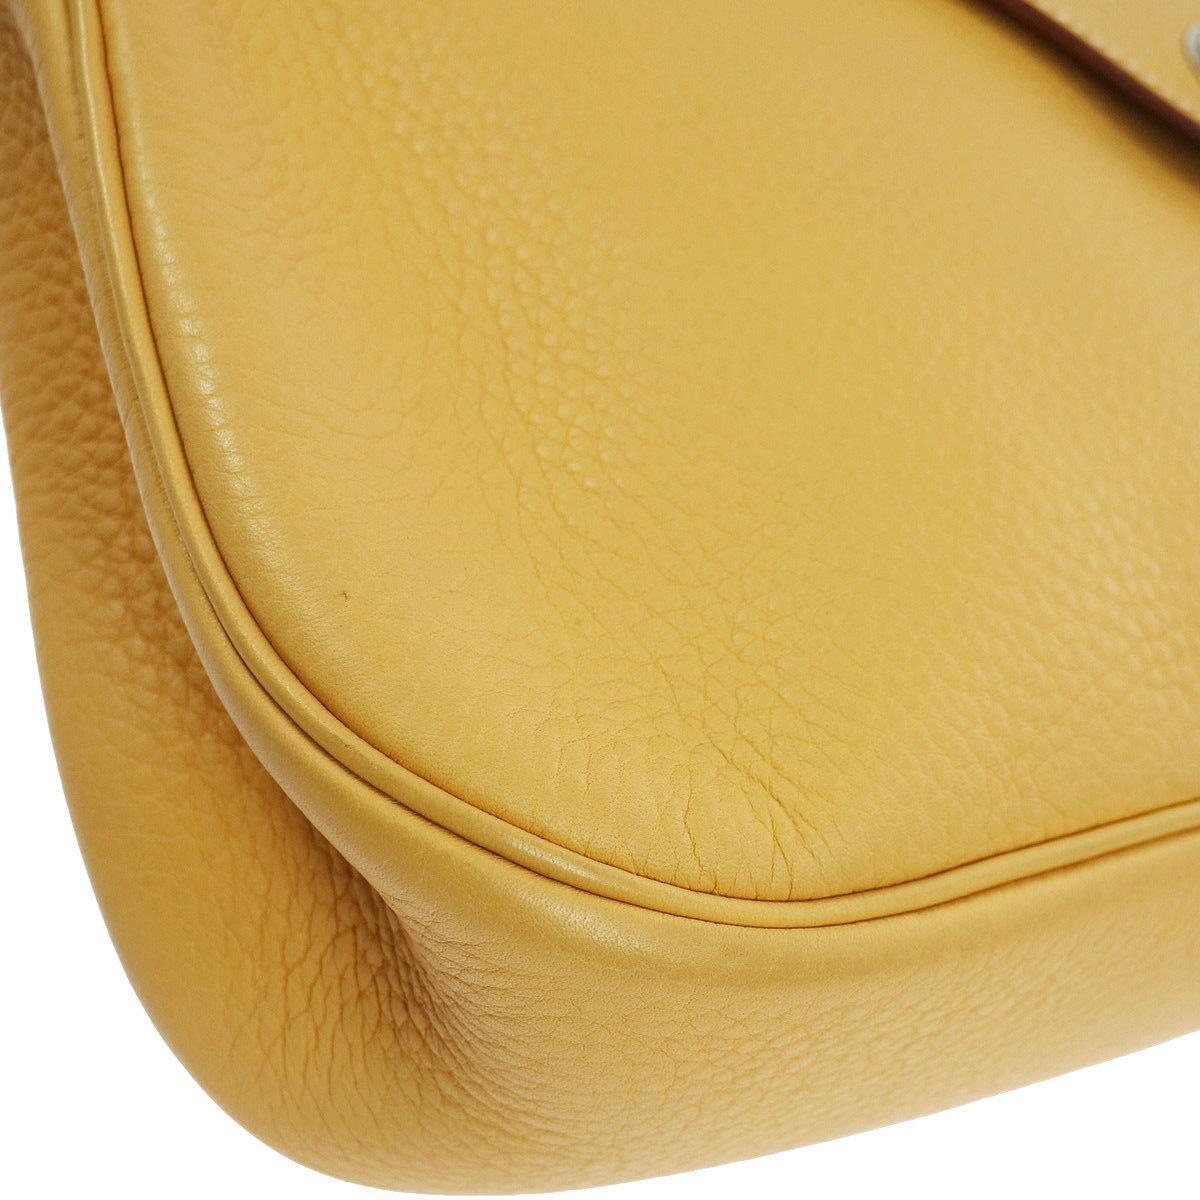 Women's Hermes Mustard Leather Large Travel Carryall Shoulder Bag